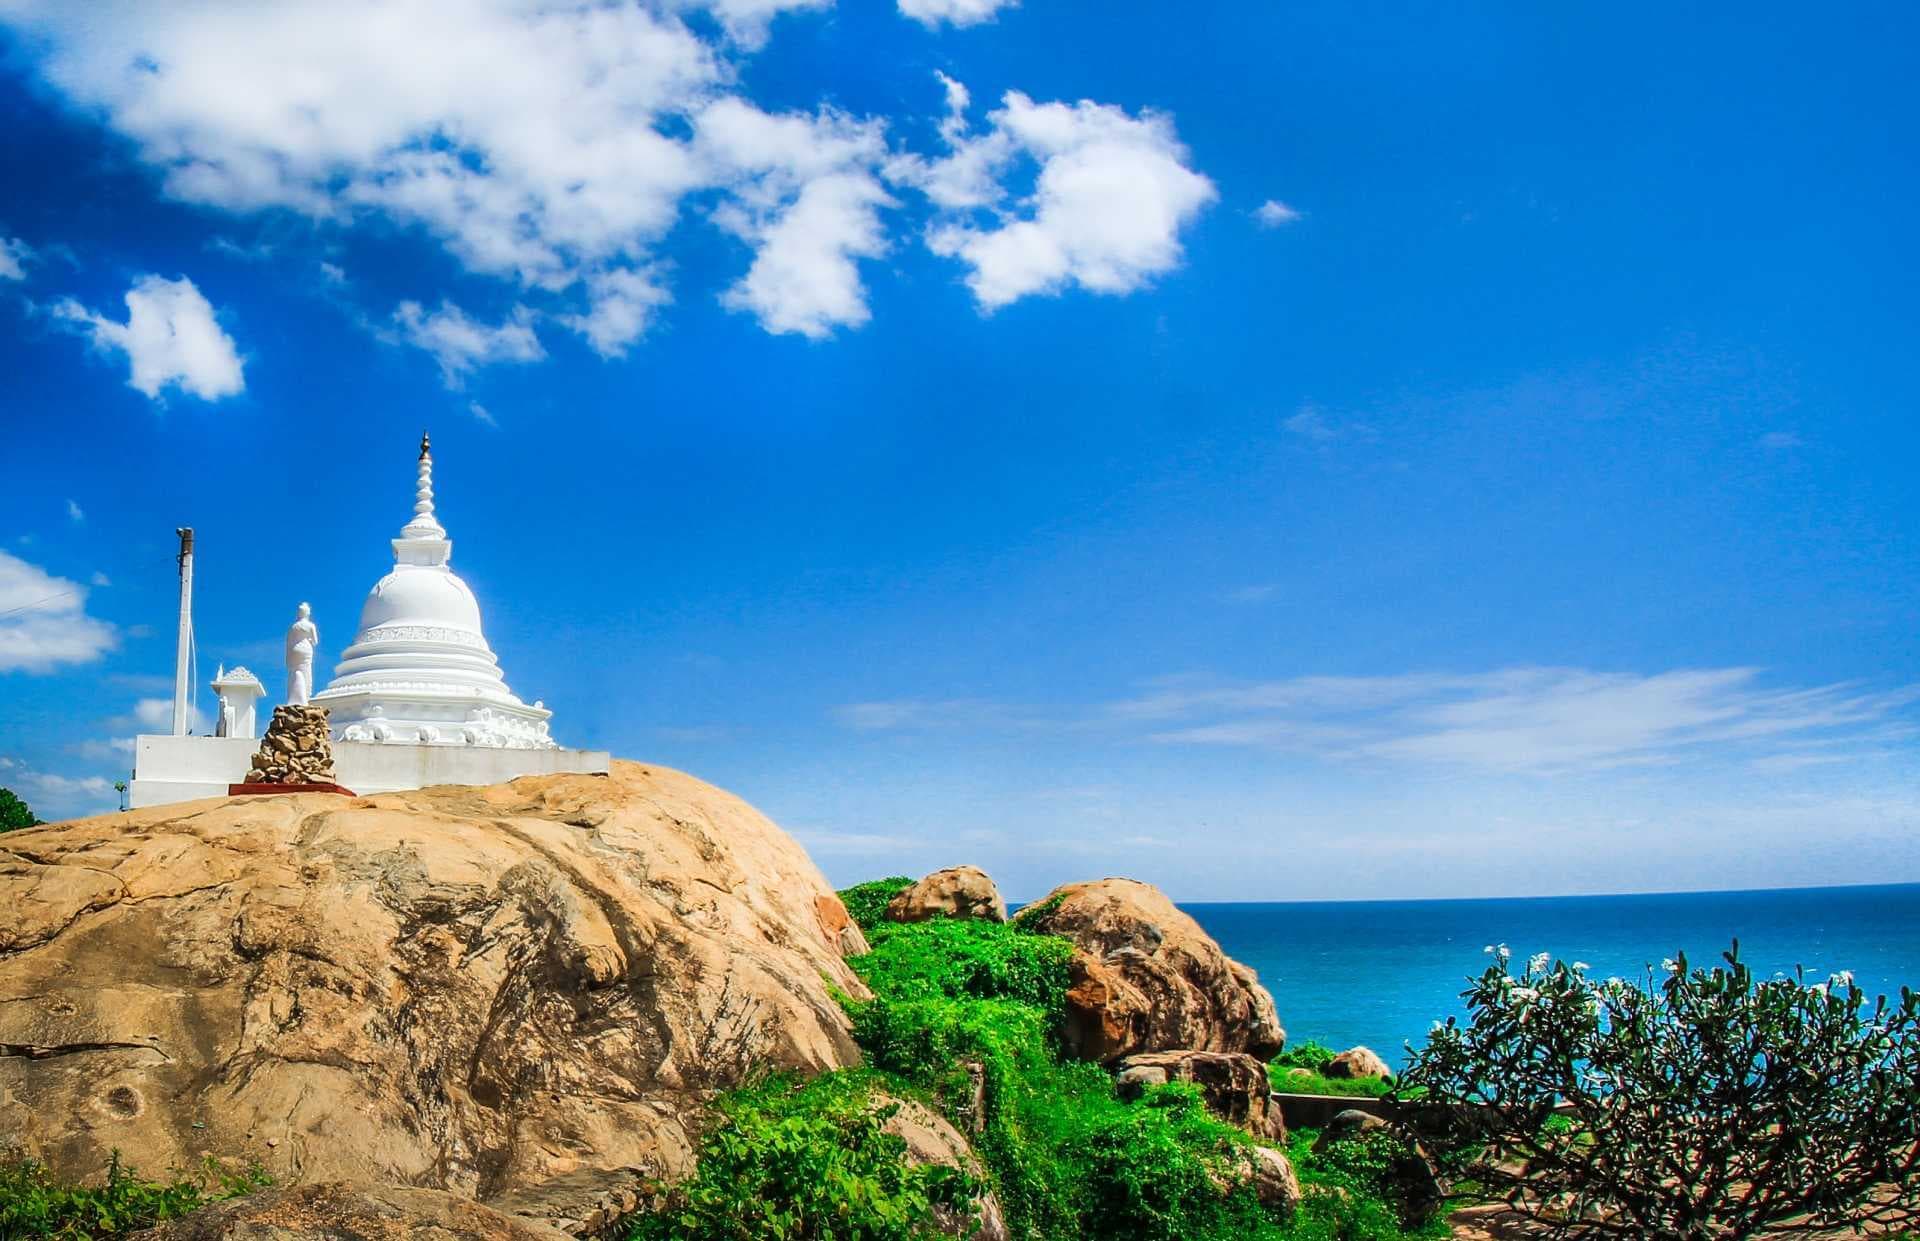 The Kirinda temple near the sea in Yala area in Sri Lanka